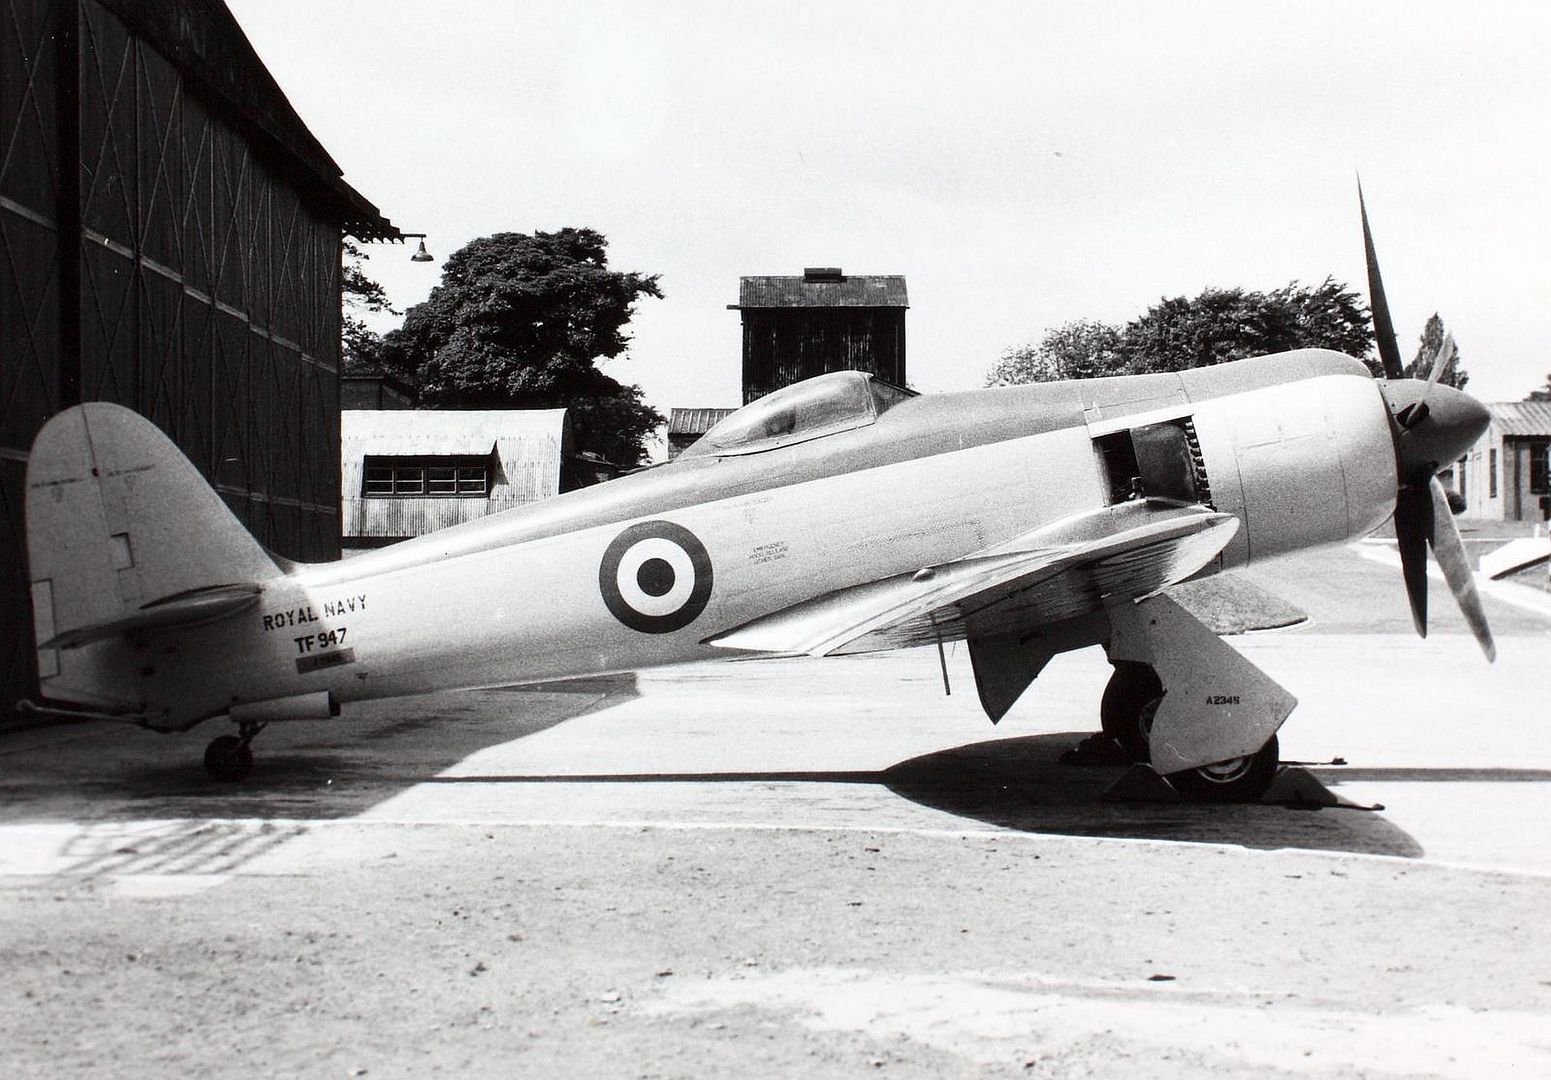 Hawker Sea Fury FB Mk 11 TF947